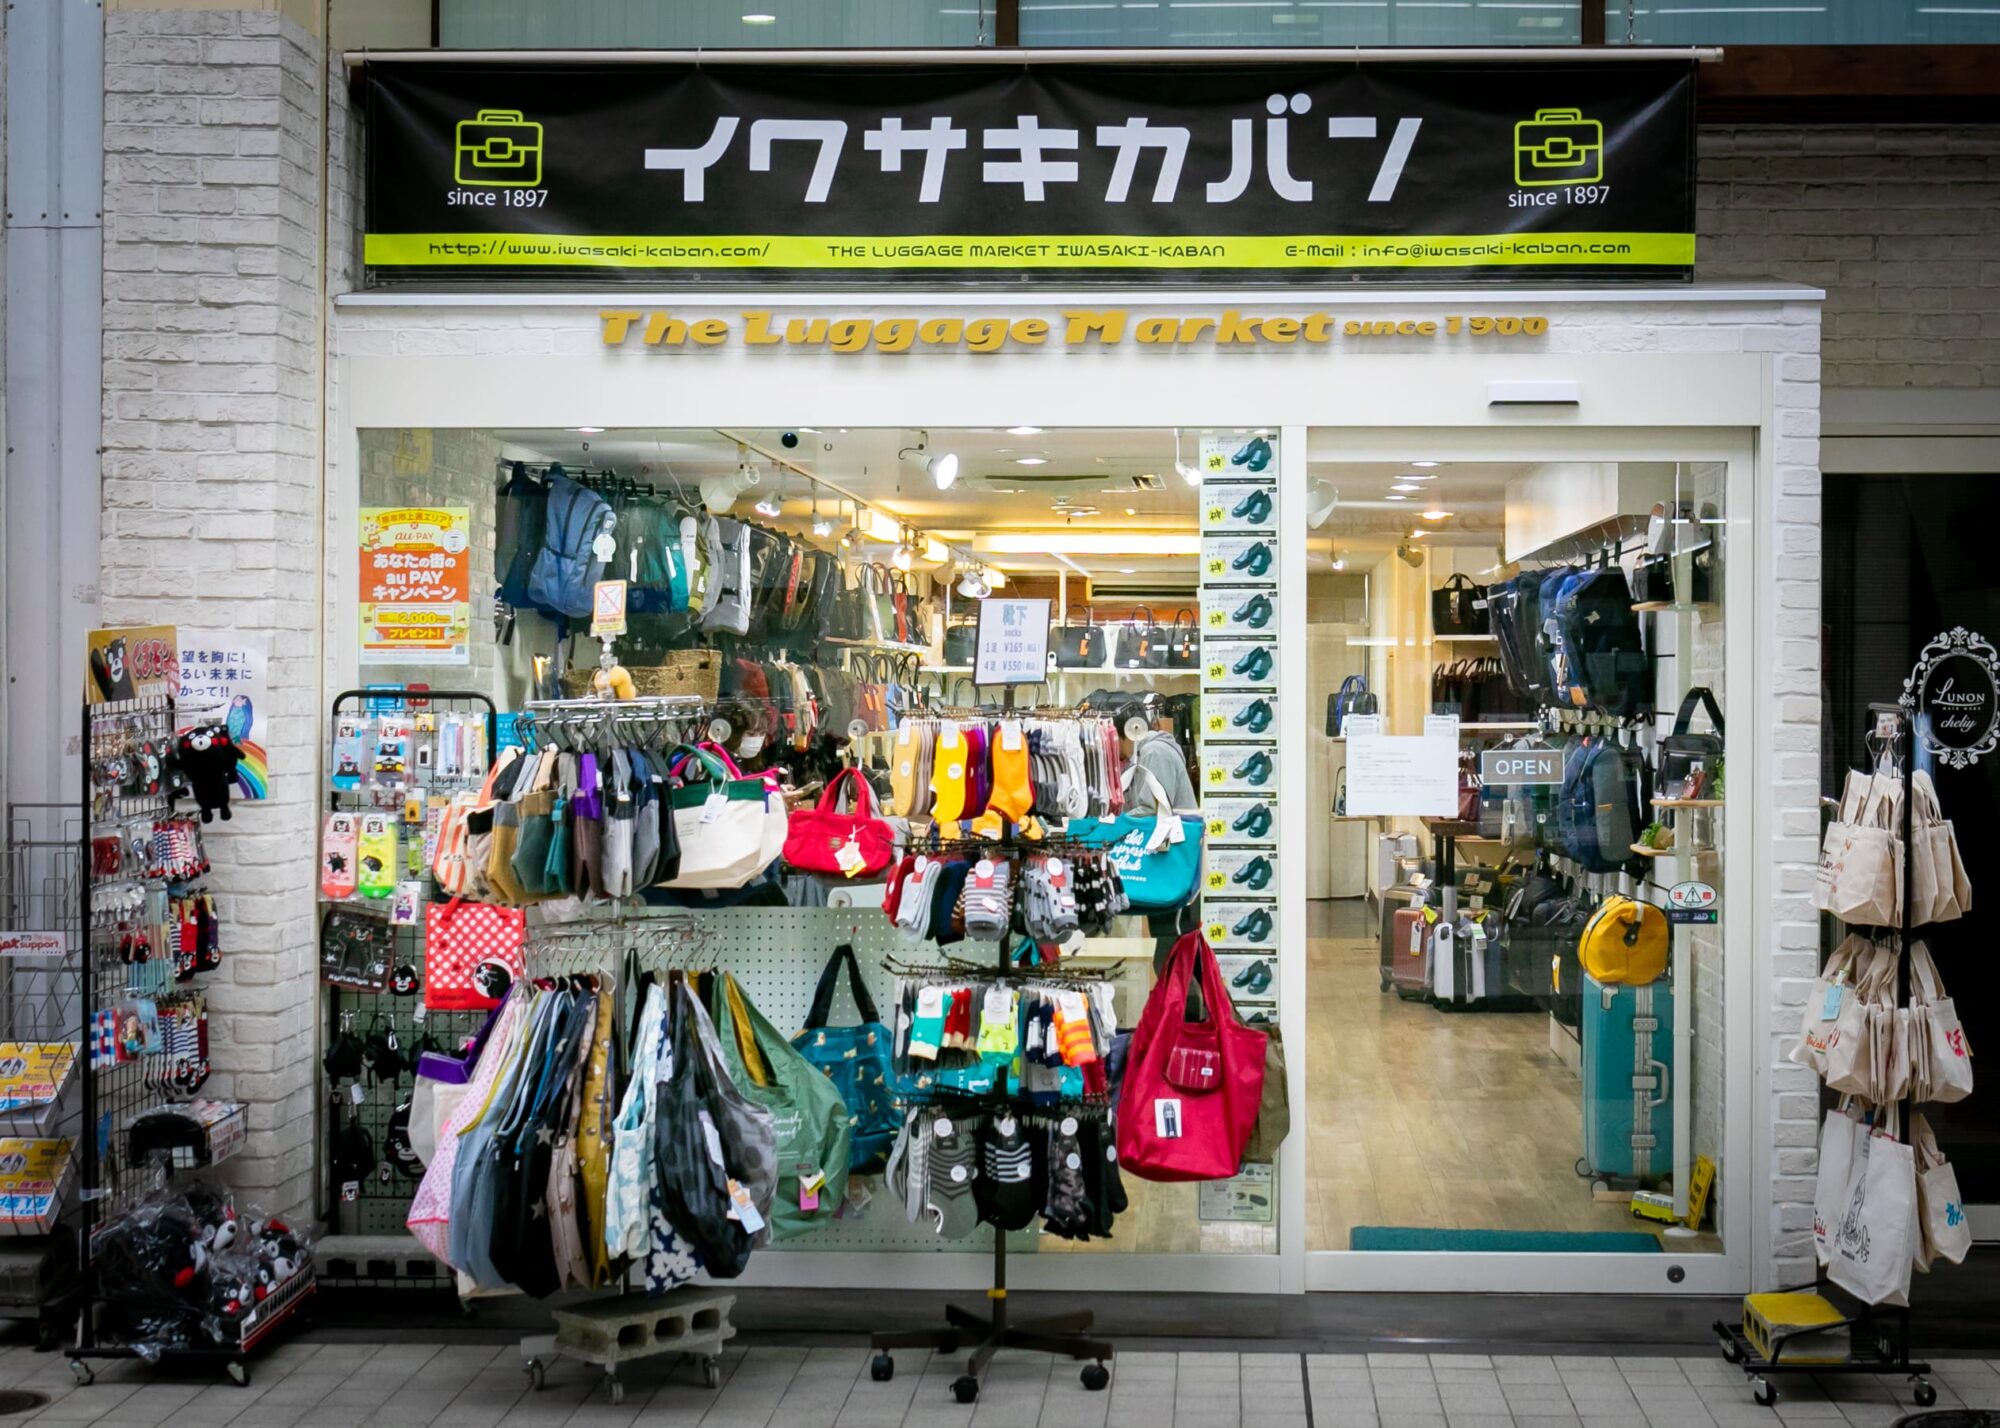 ラゲッジマーケット 岩崎カバン店の写真